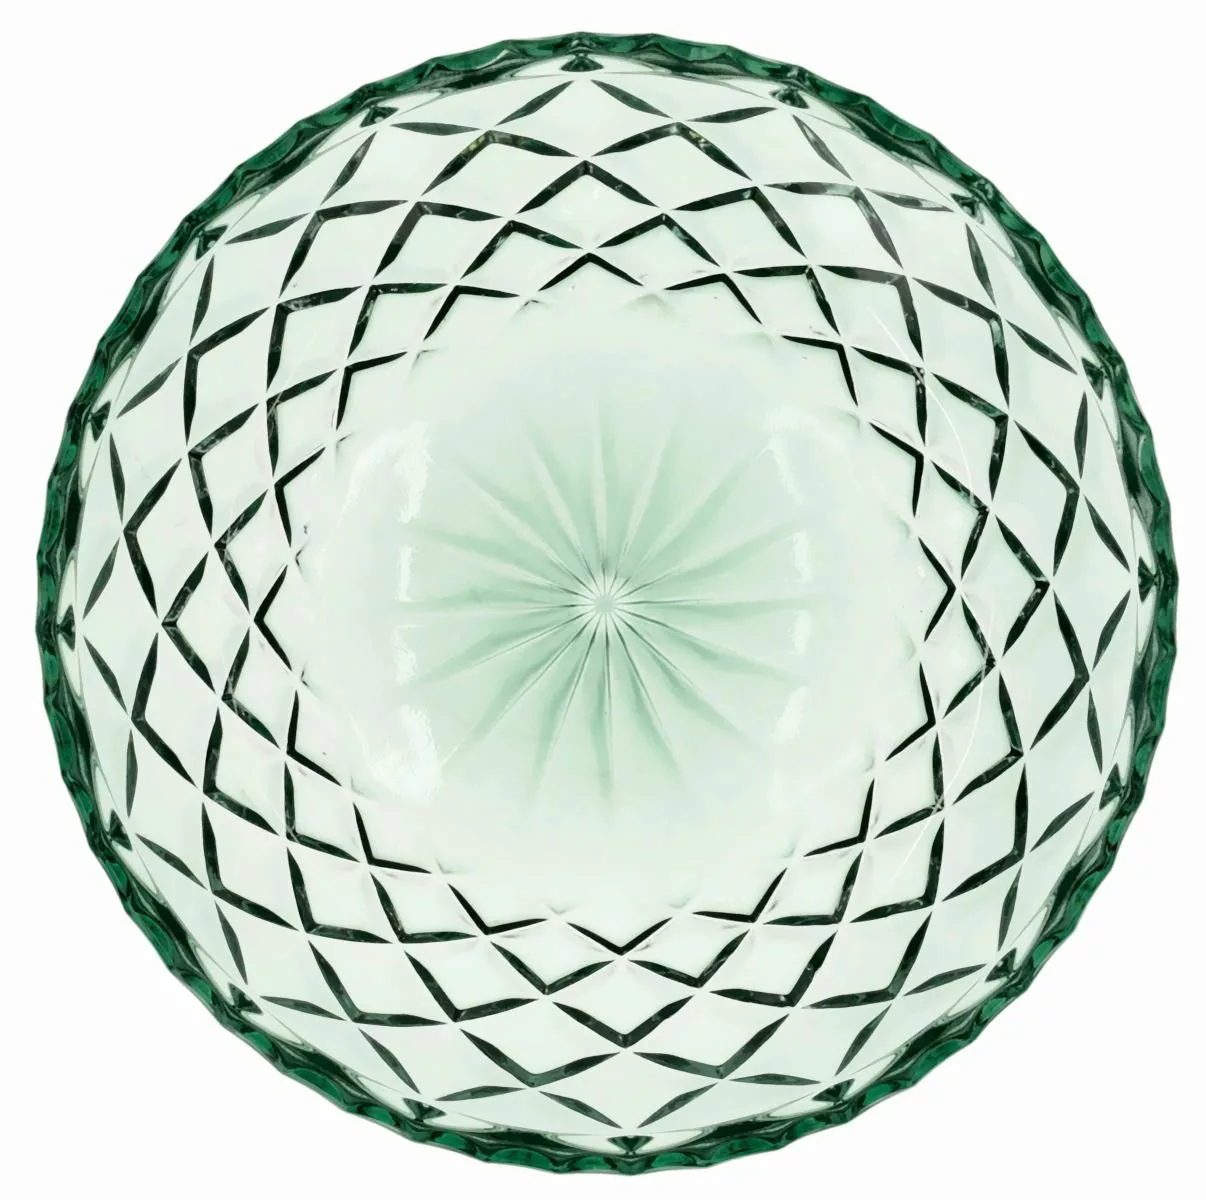 Lyngby Schüsseln, Schalen & Platten Sorrento Teller Glas grün 16 cm Set4 (g günstig online kaufen